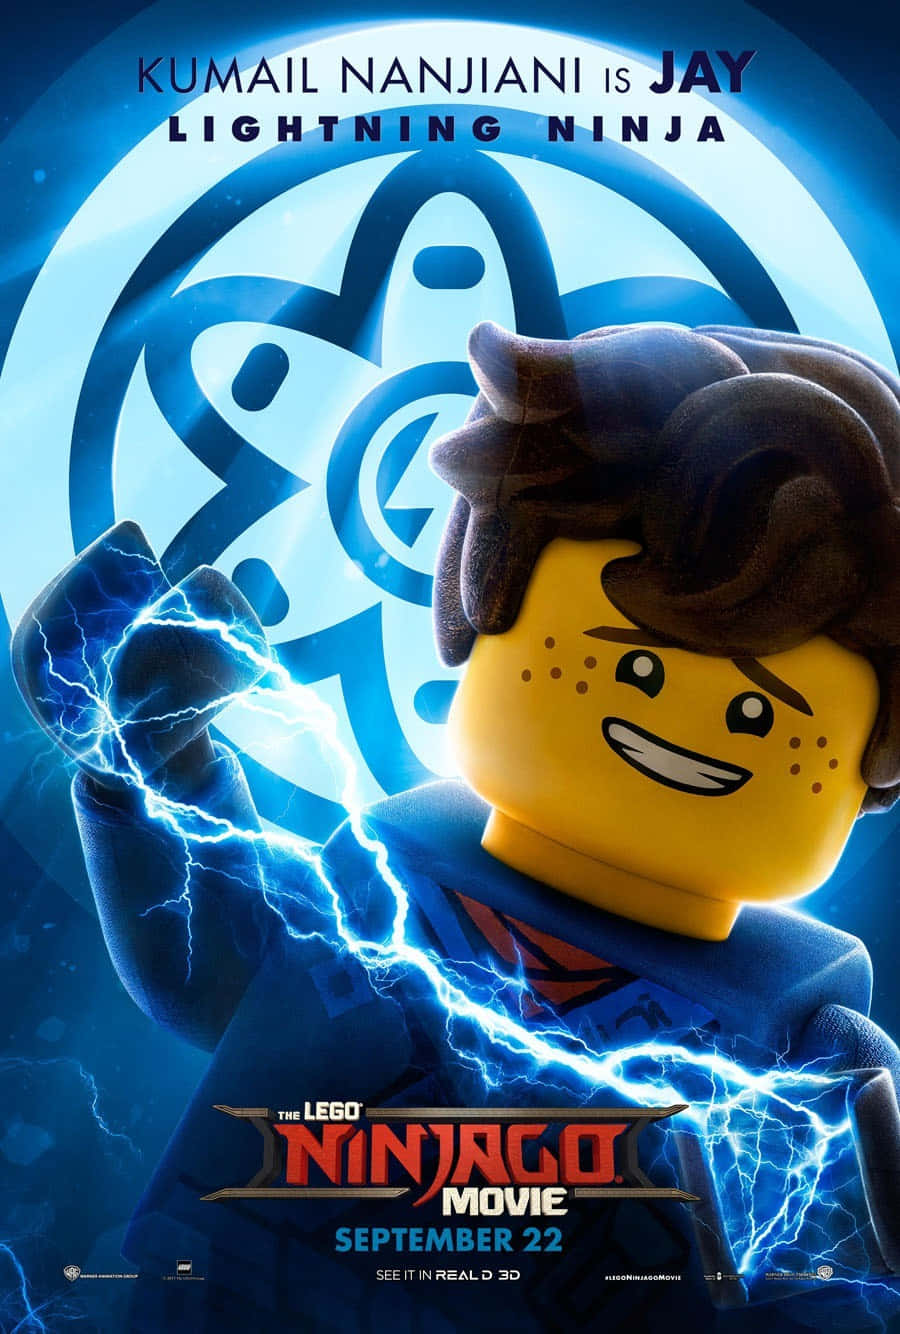 Jay The Ninja From The Lego Ninjago Movie Wallpaper